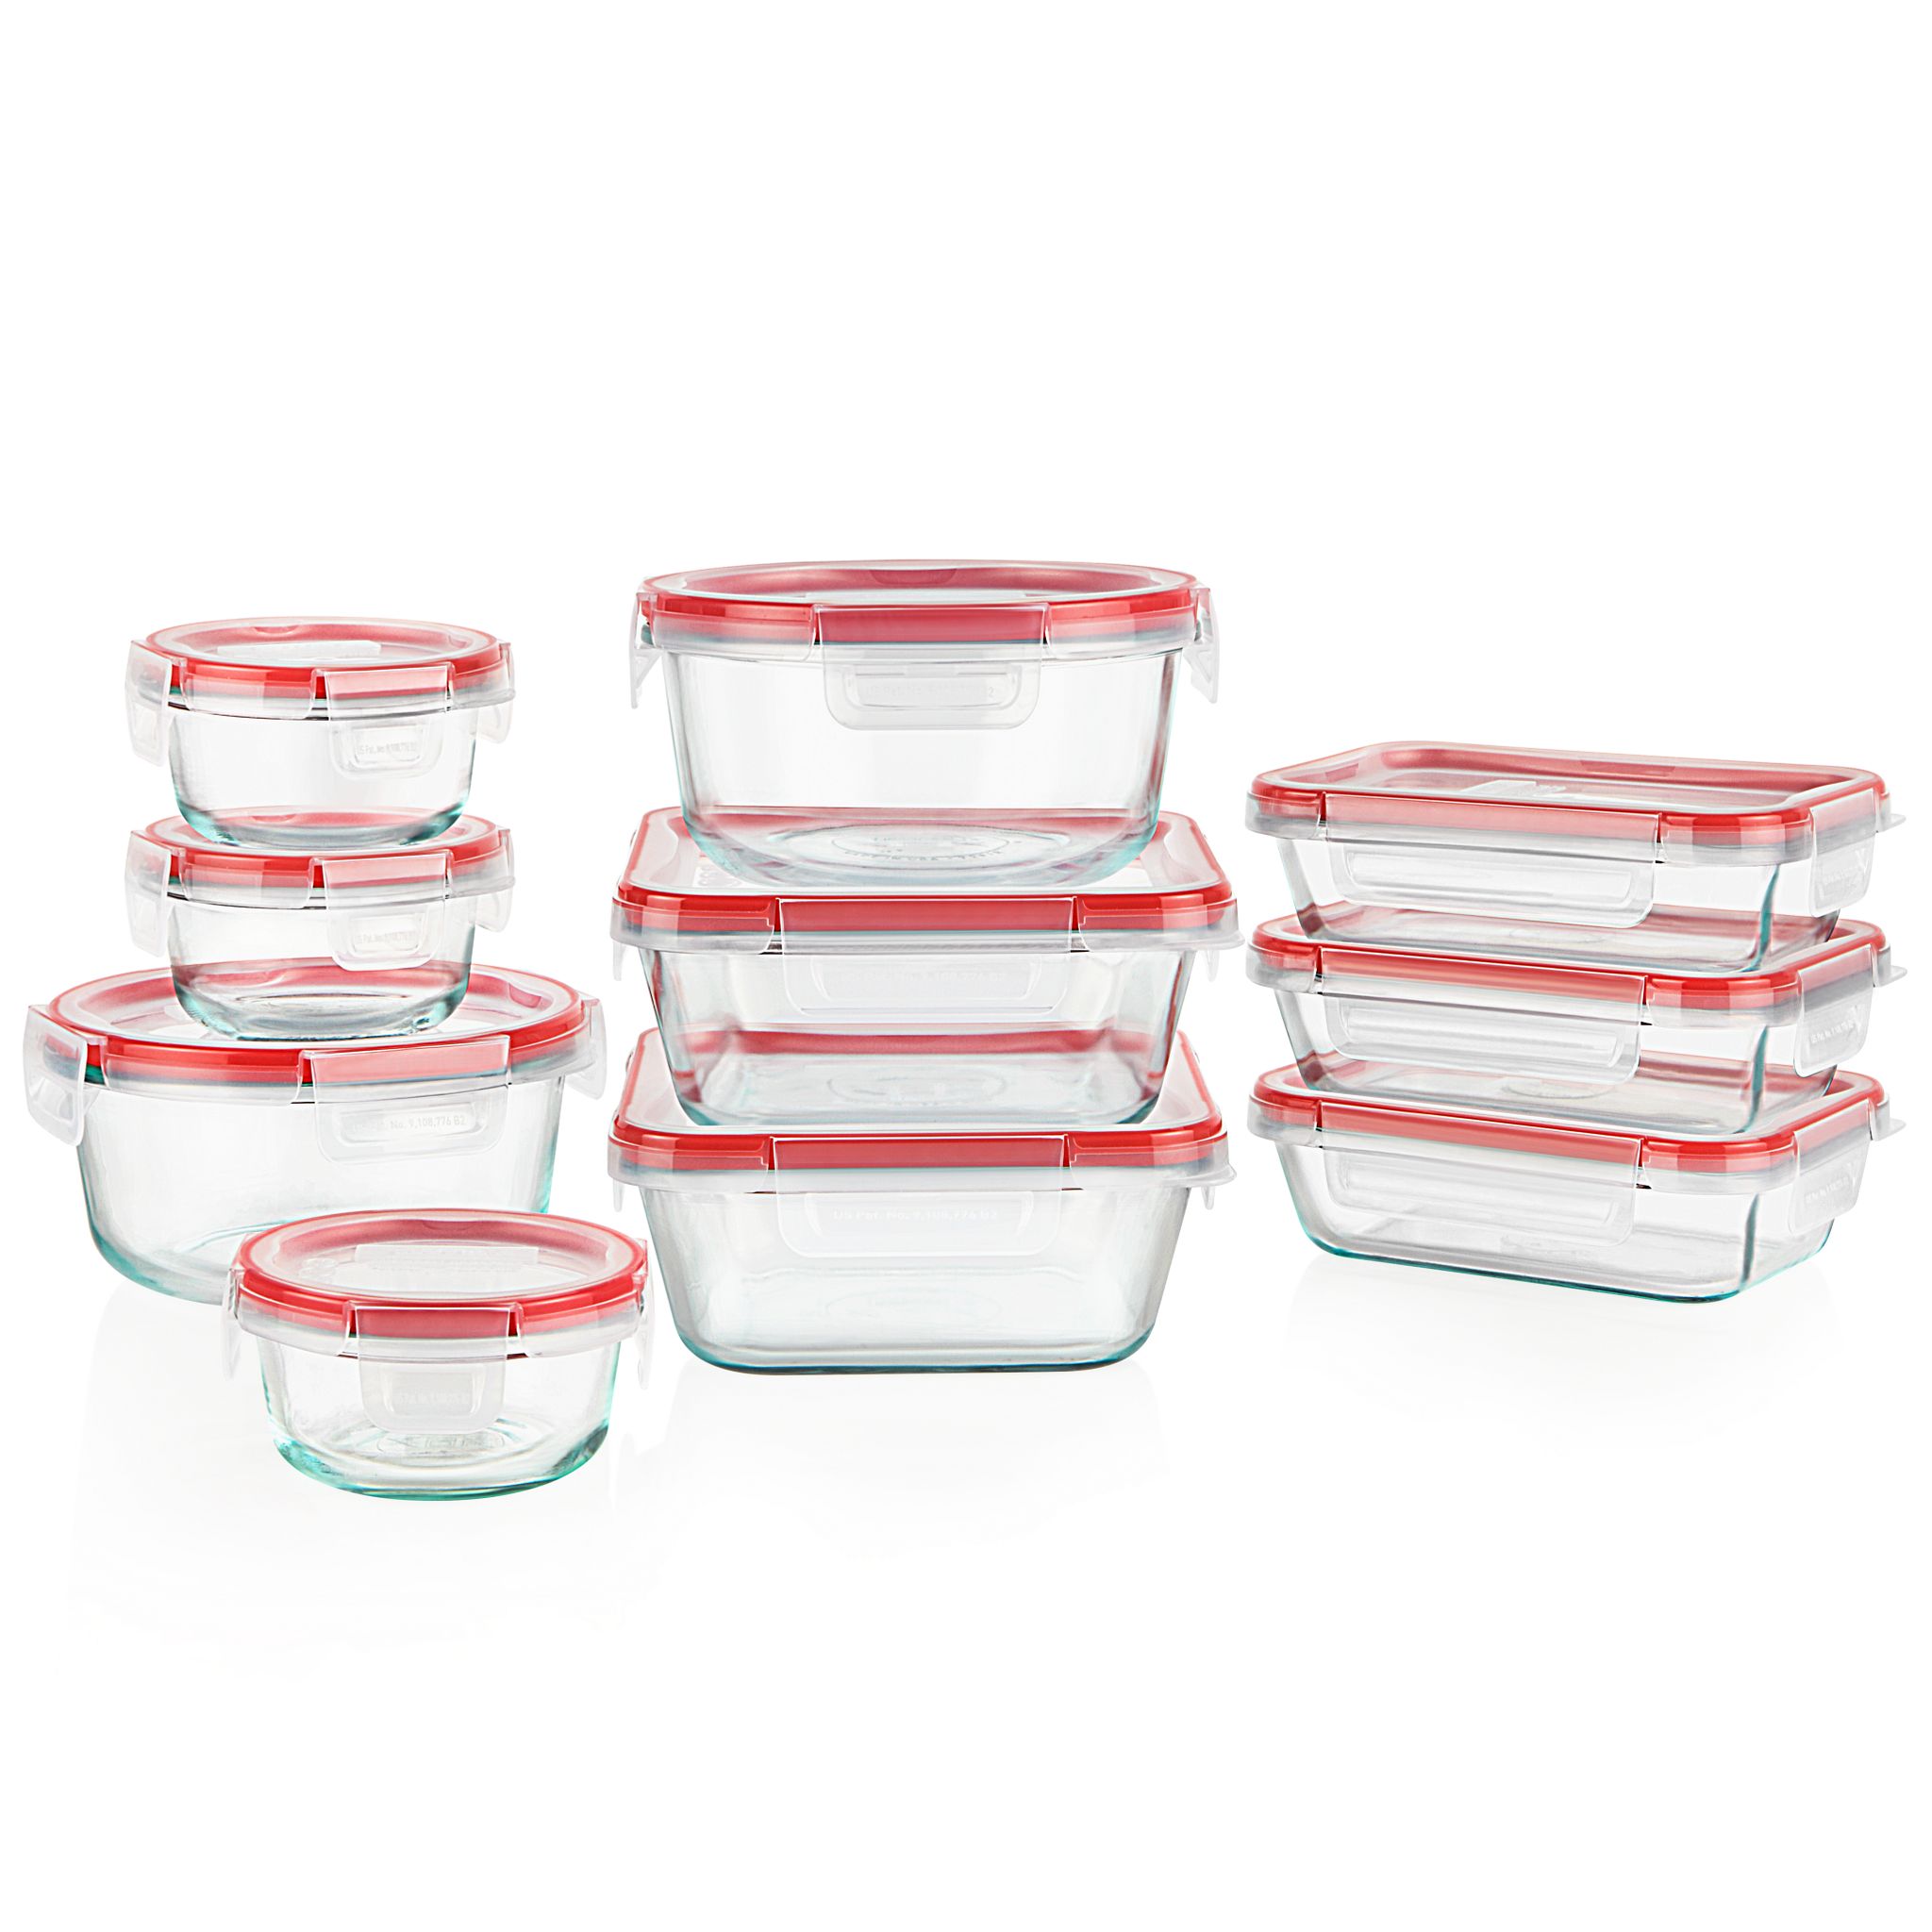 Begroeten handboeien op vakantie Freshlock™ 20-piece Glass Storage Set | Pyrex